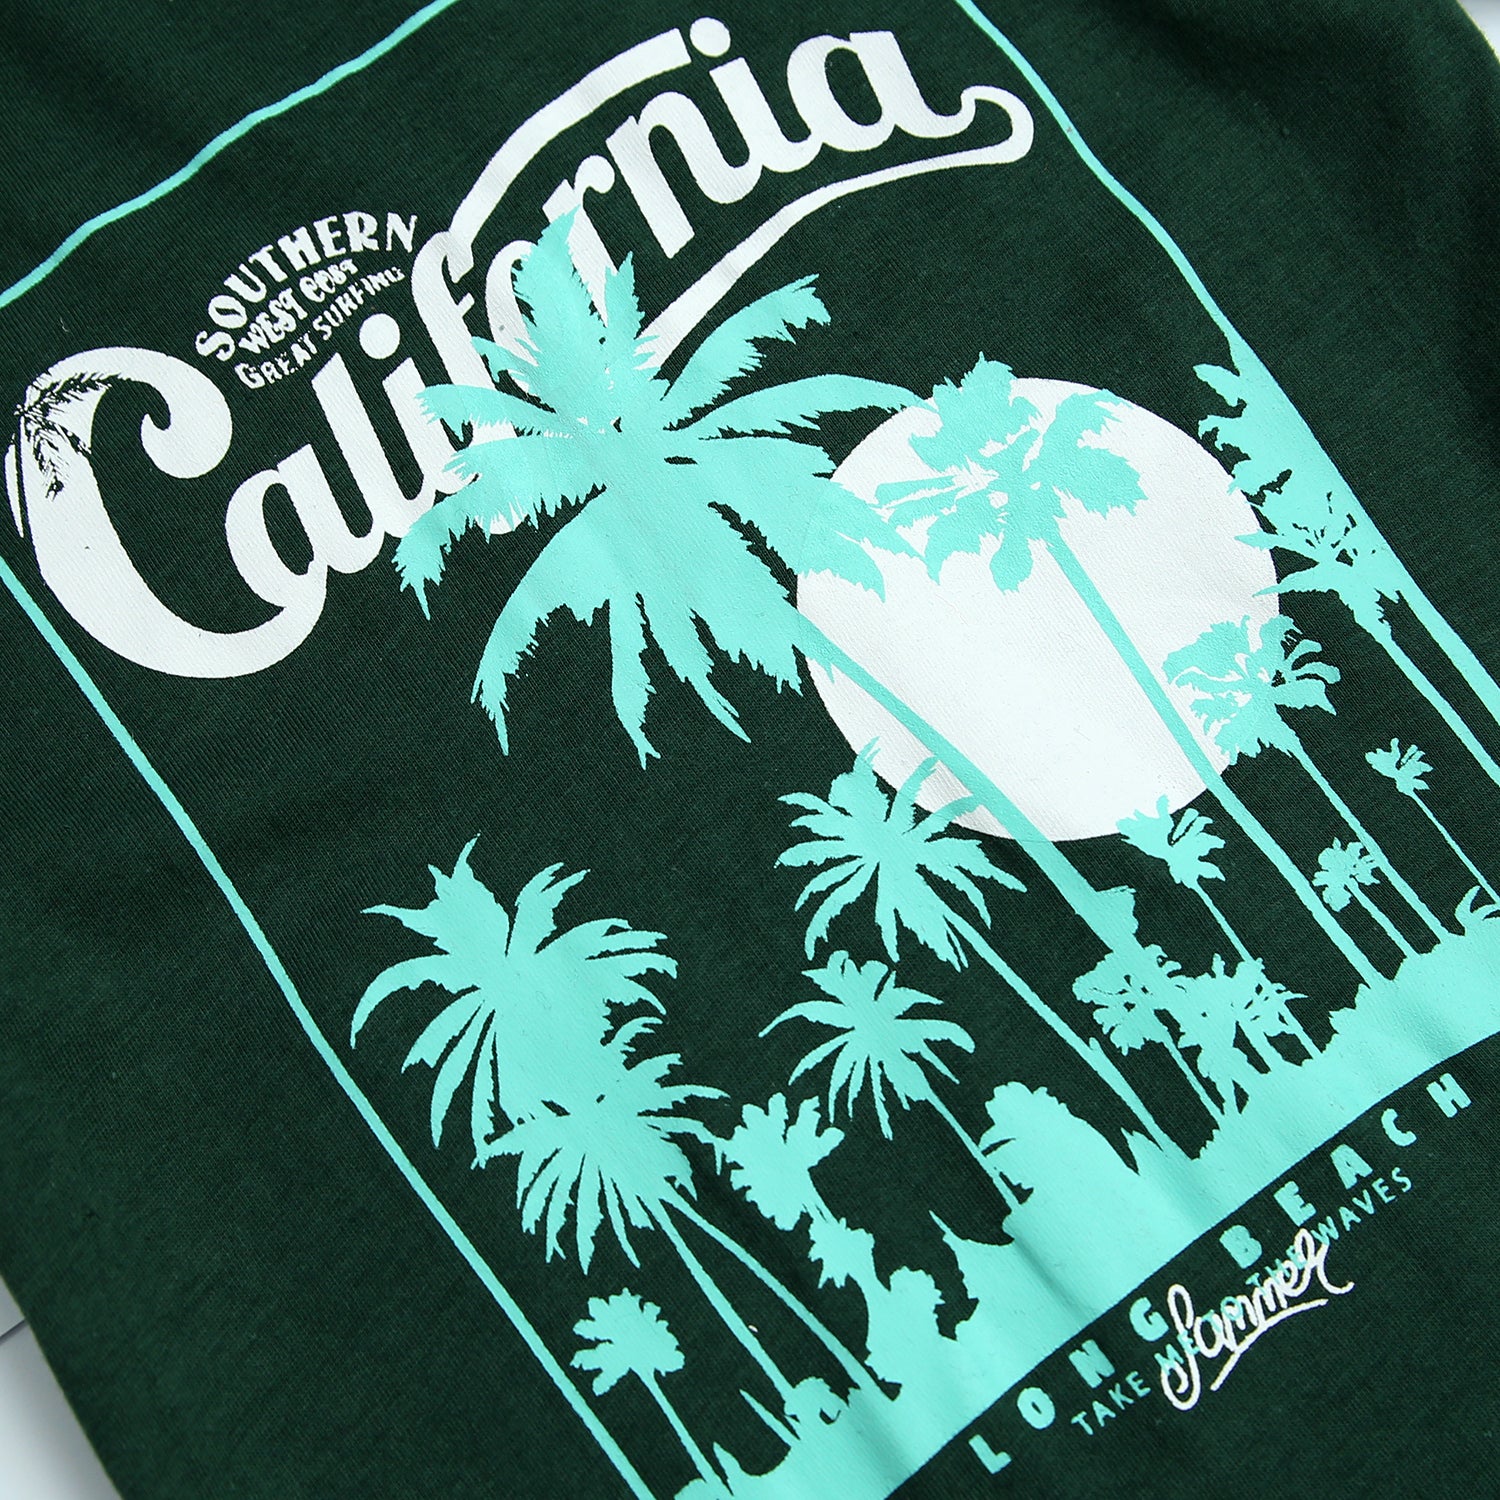 Boys Pure Cotton "California Beach" Graphic T-Shirt